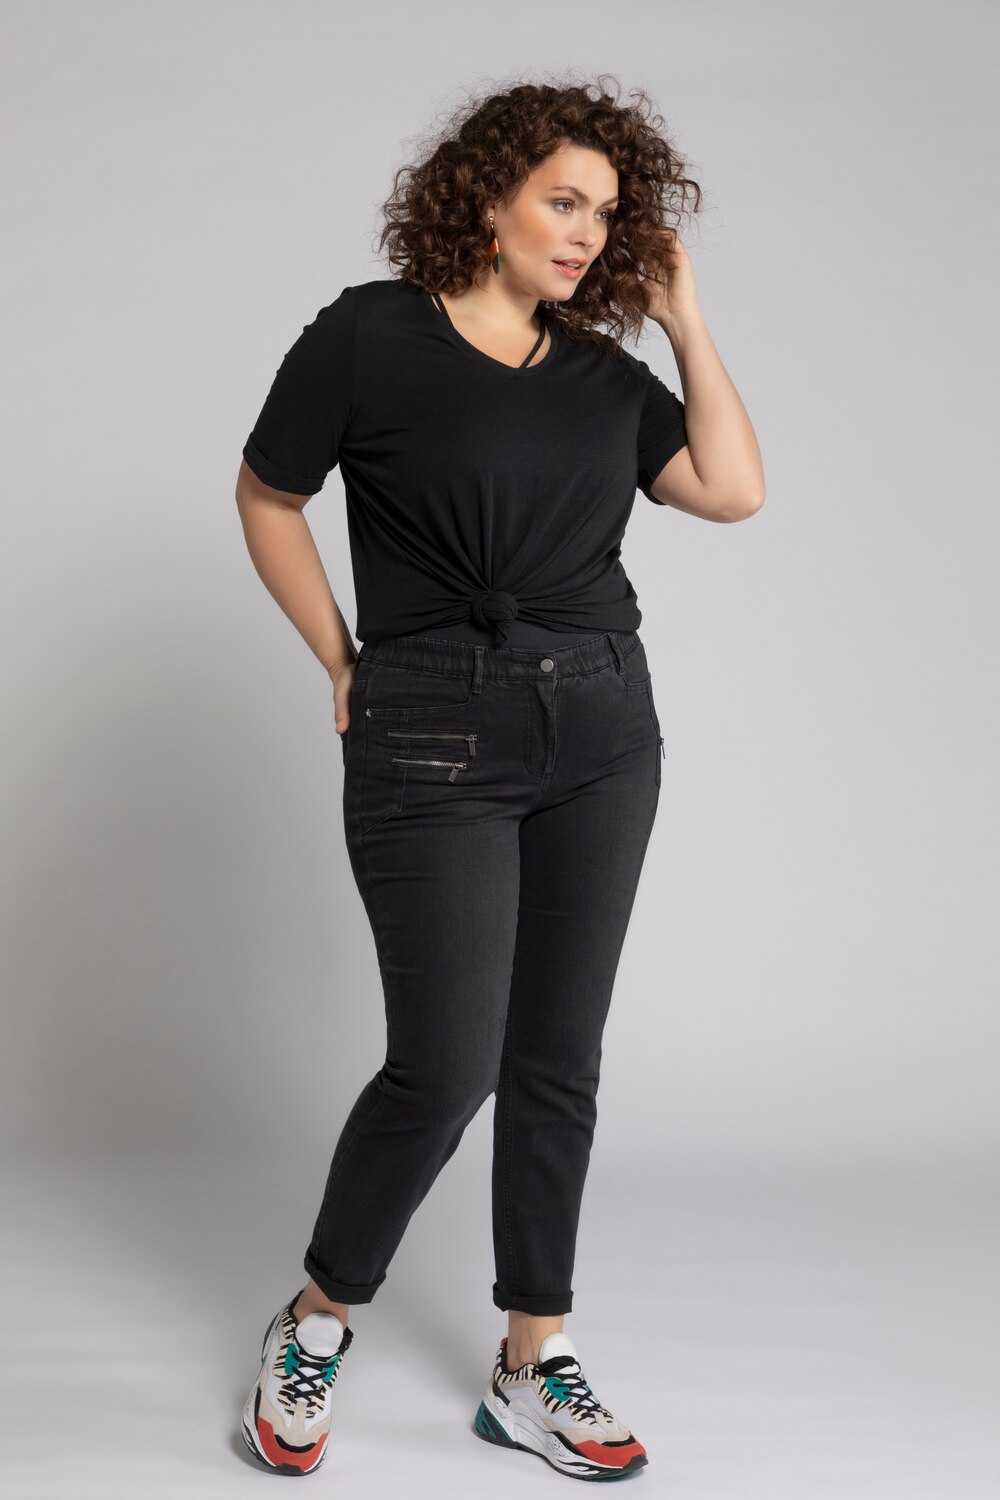 Grote Maten jeans Sarah, Dames, zwart, Maat: 124, Katoen/Polyester/Synthetische vezels, Ulla Popken